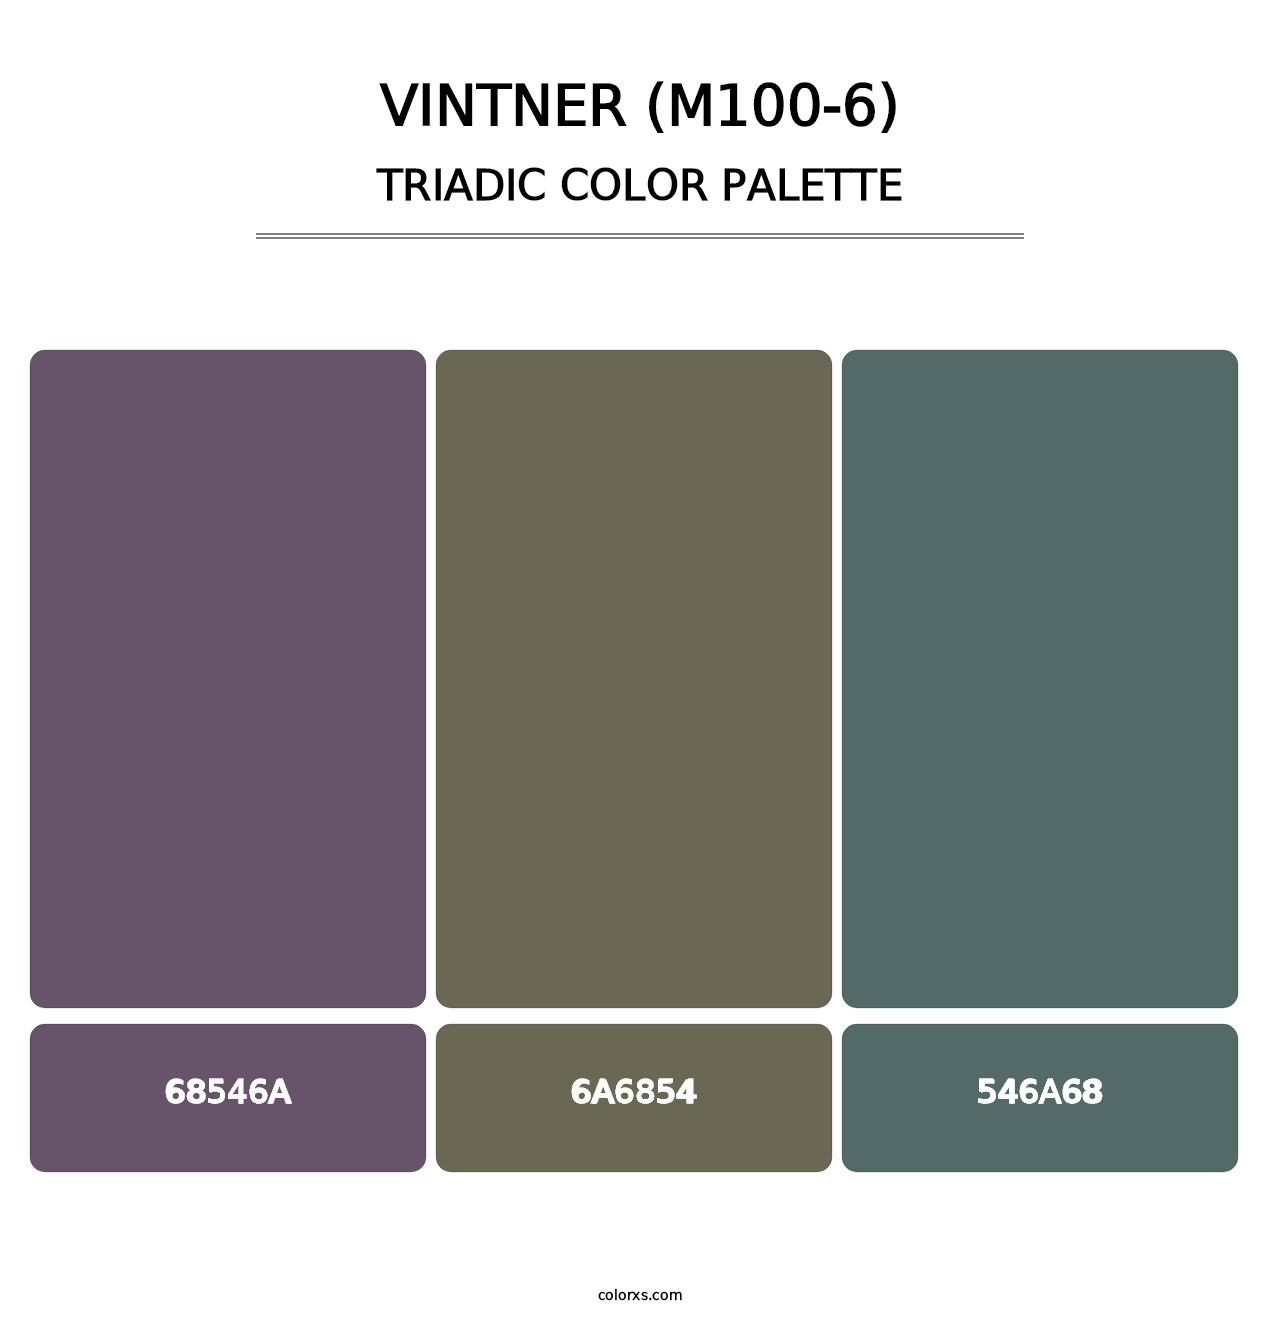 Vintner (M100-6) - Triadic Color Palette